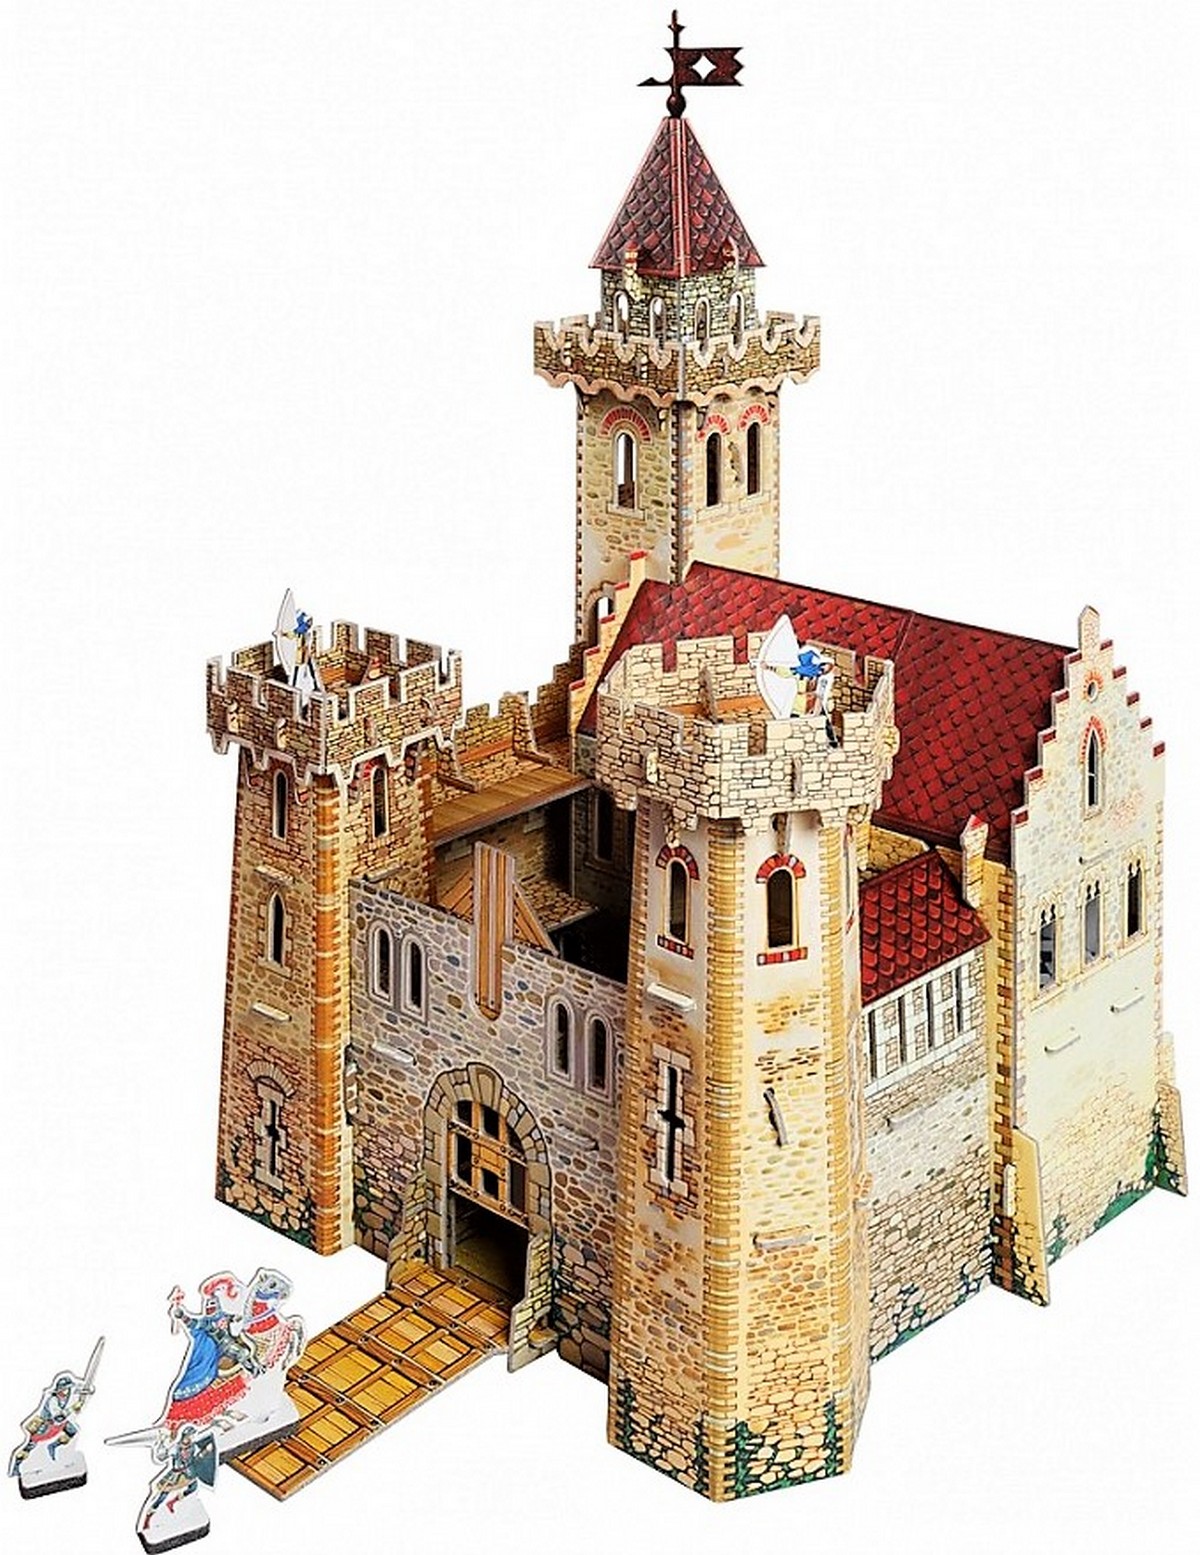 3D Puzzle KARTONMODELLBAU Papier Modell Geschenk Idee Spielzeug 286 Burgmauer 